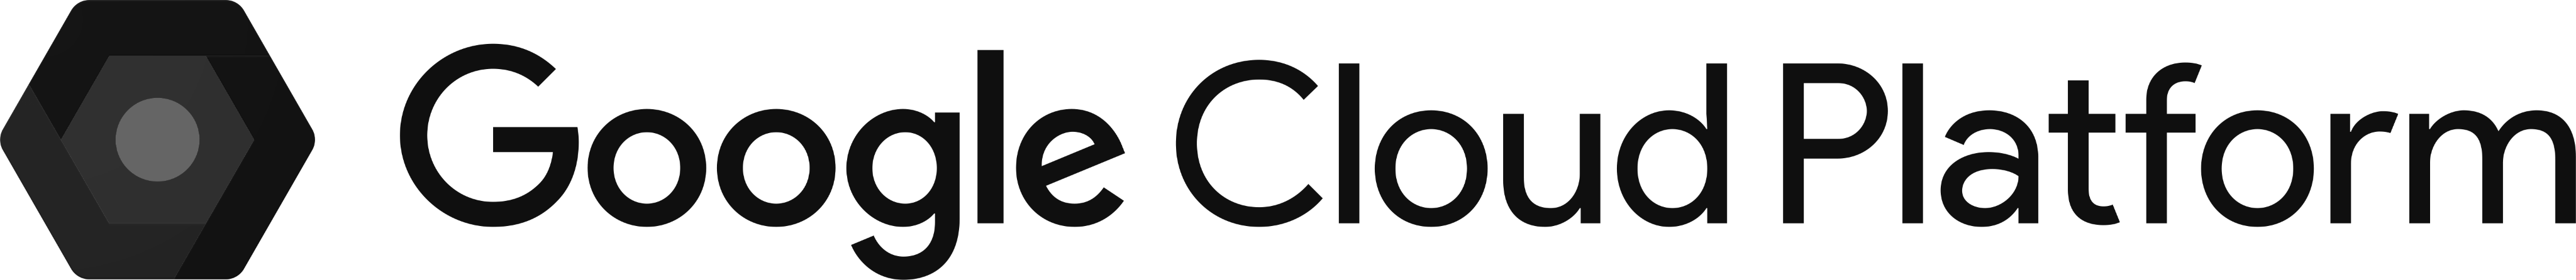 google_cloud_platform-logo